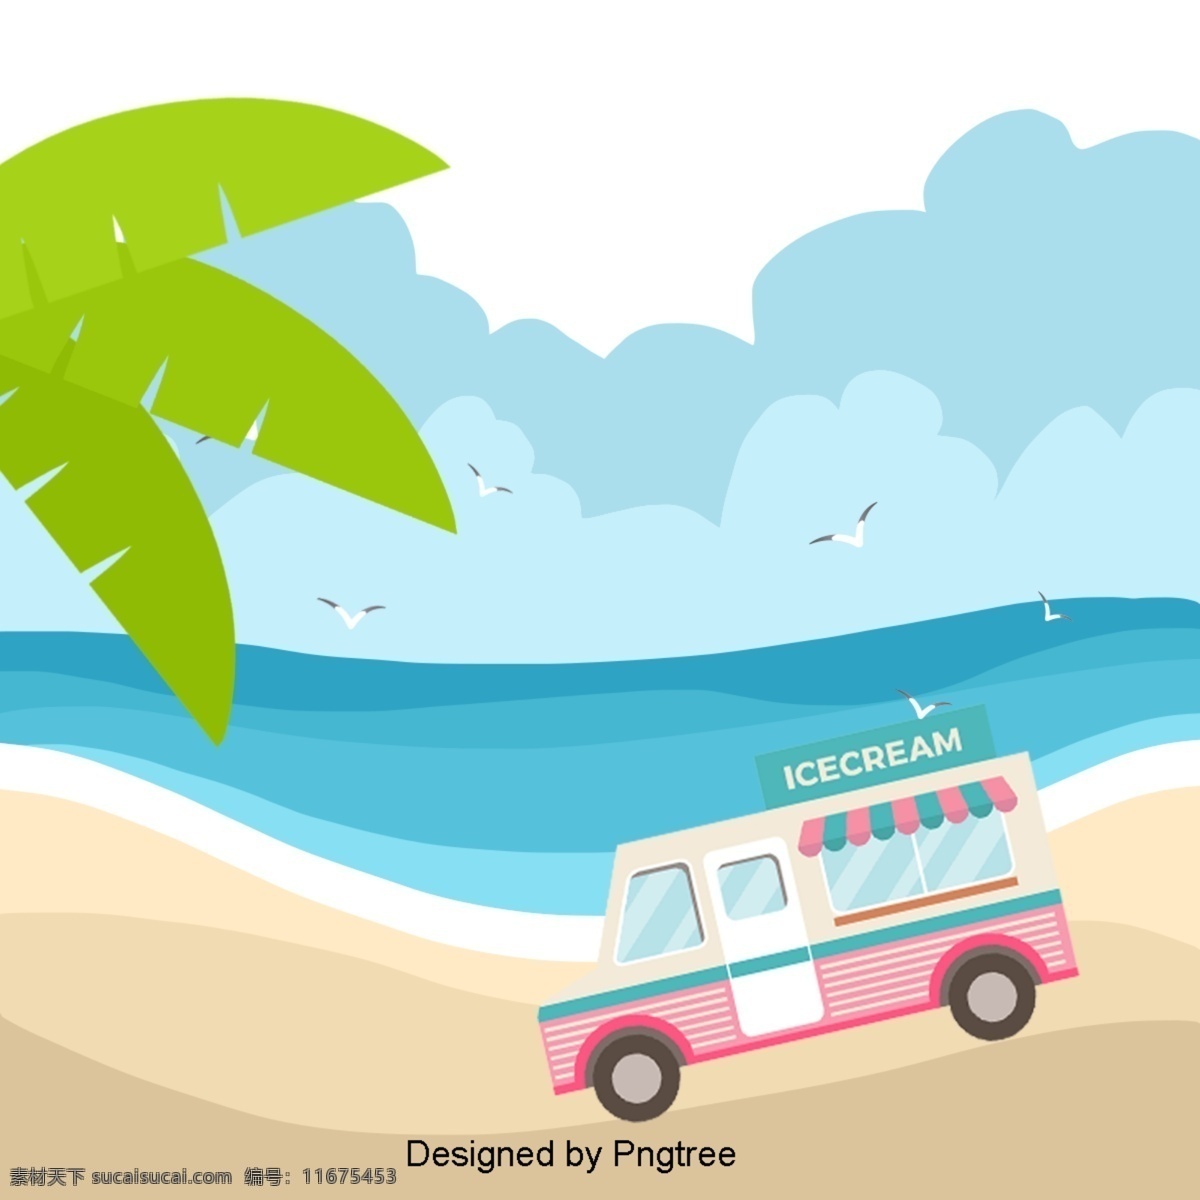 卡通 手绘 沙滩 简单 风格 海洋 派对 海滩 假日 创意 图形 画报 旅游